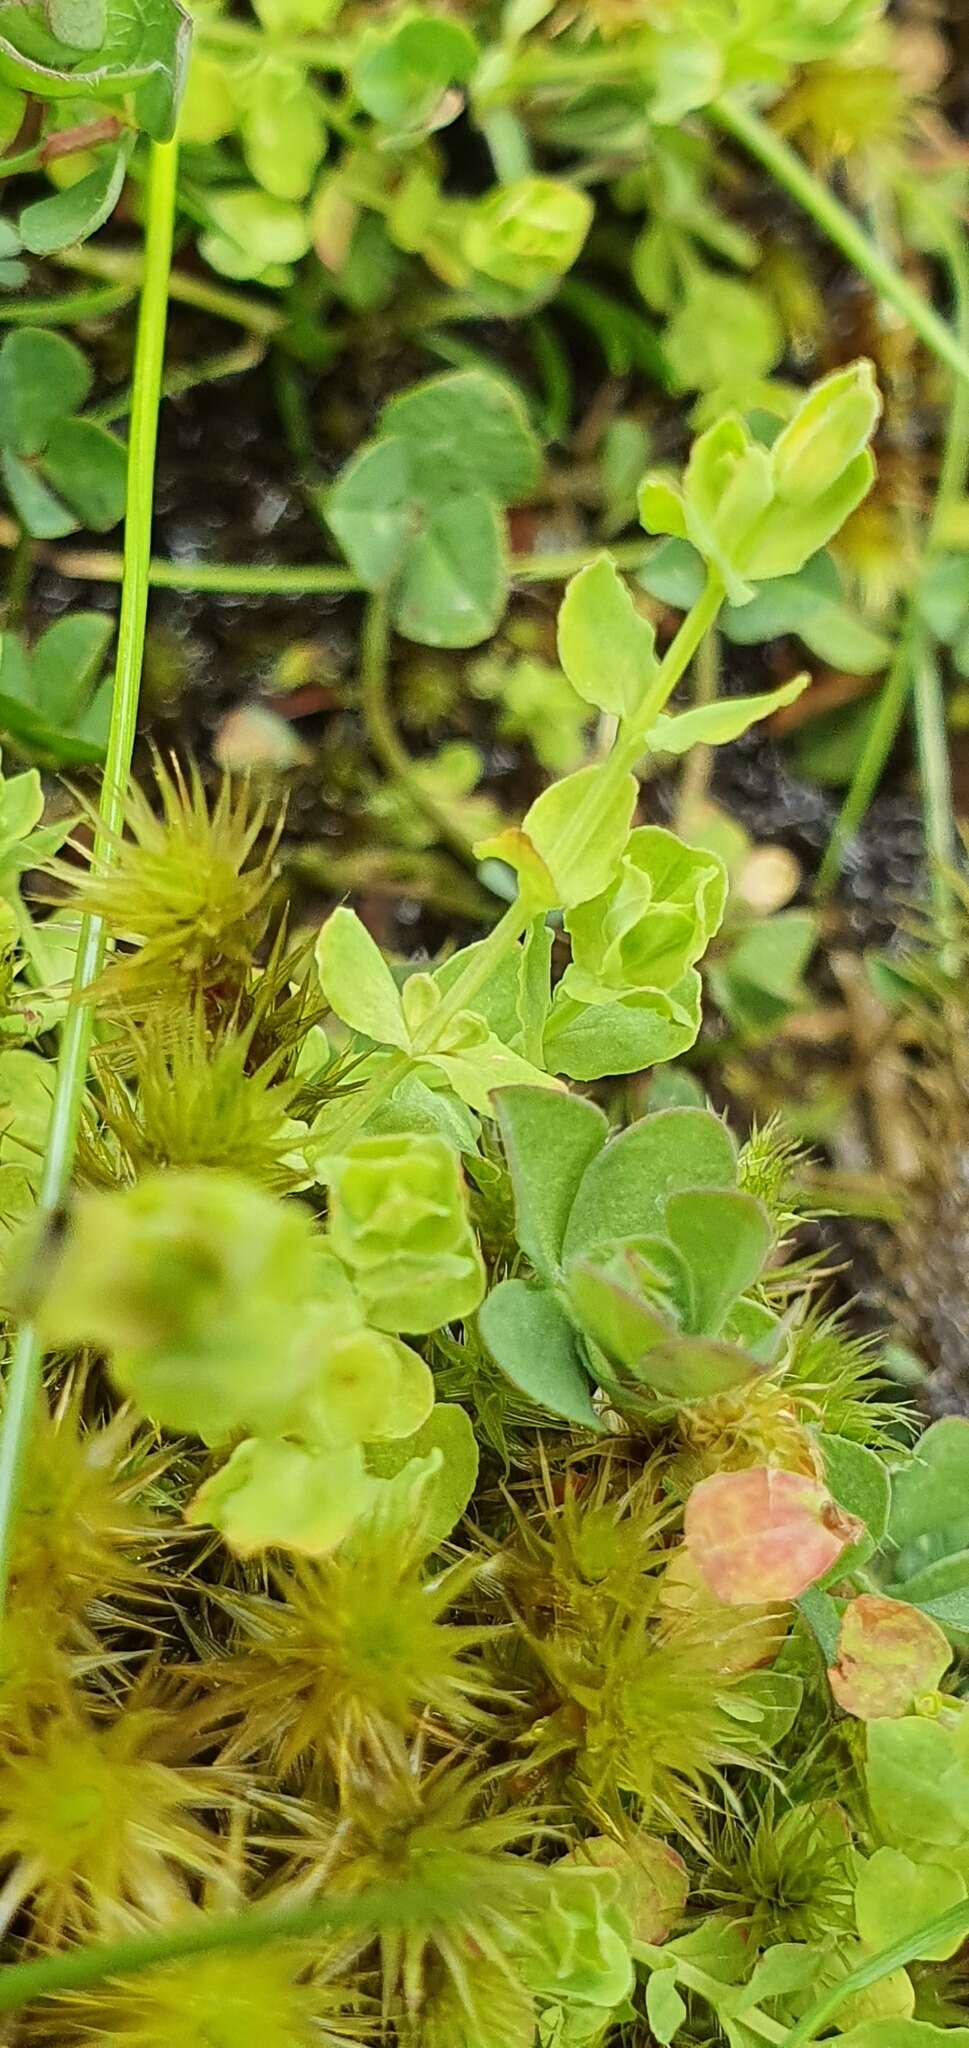 Image de Hypericum japonicum subsp. japonicum